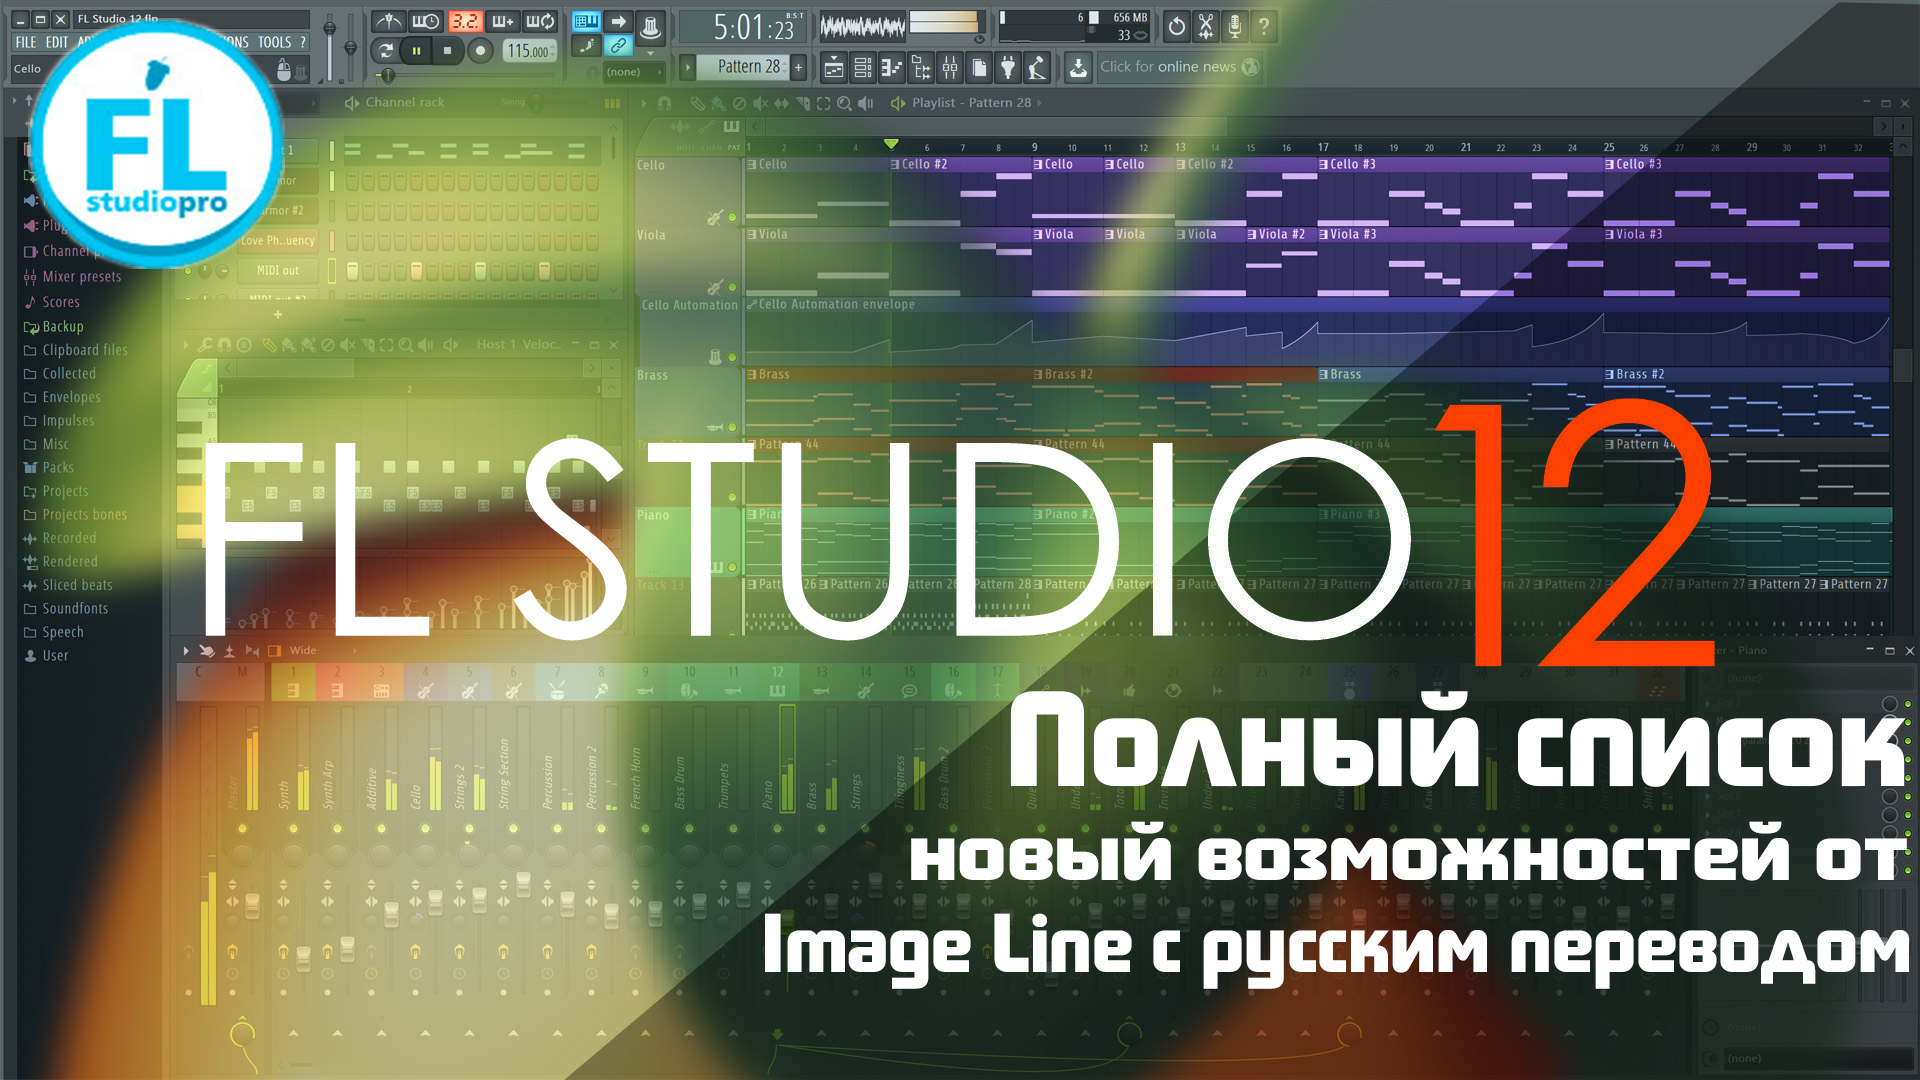 FL Studio 12 обзор на русском языке